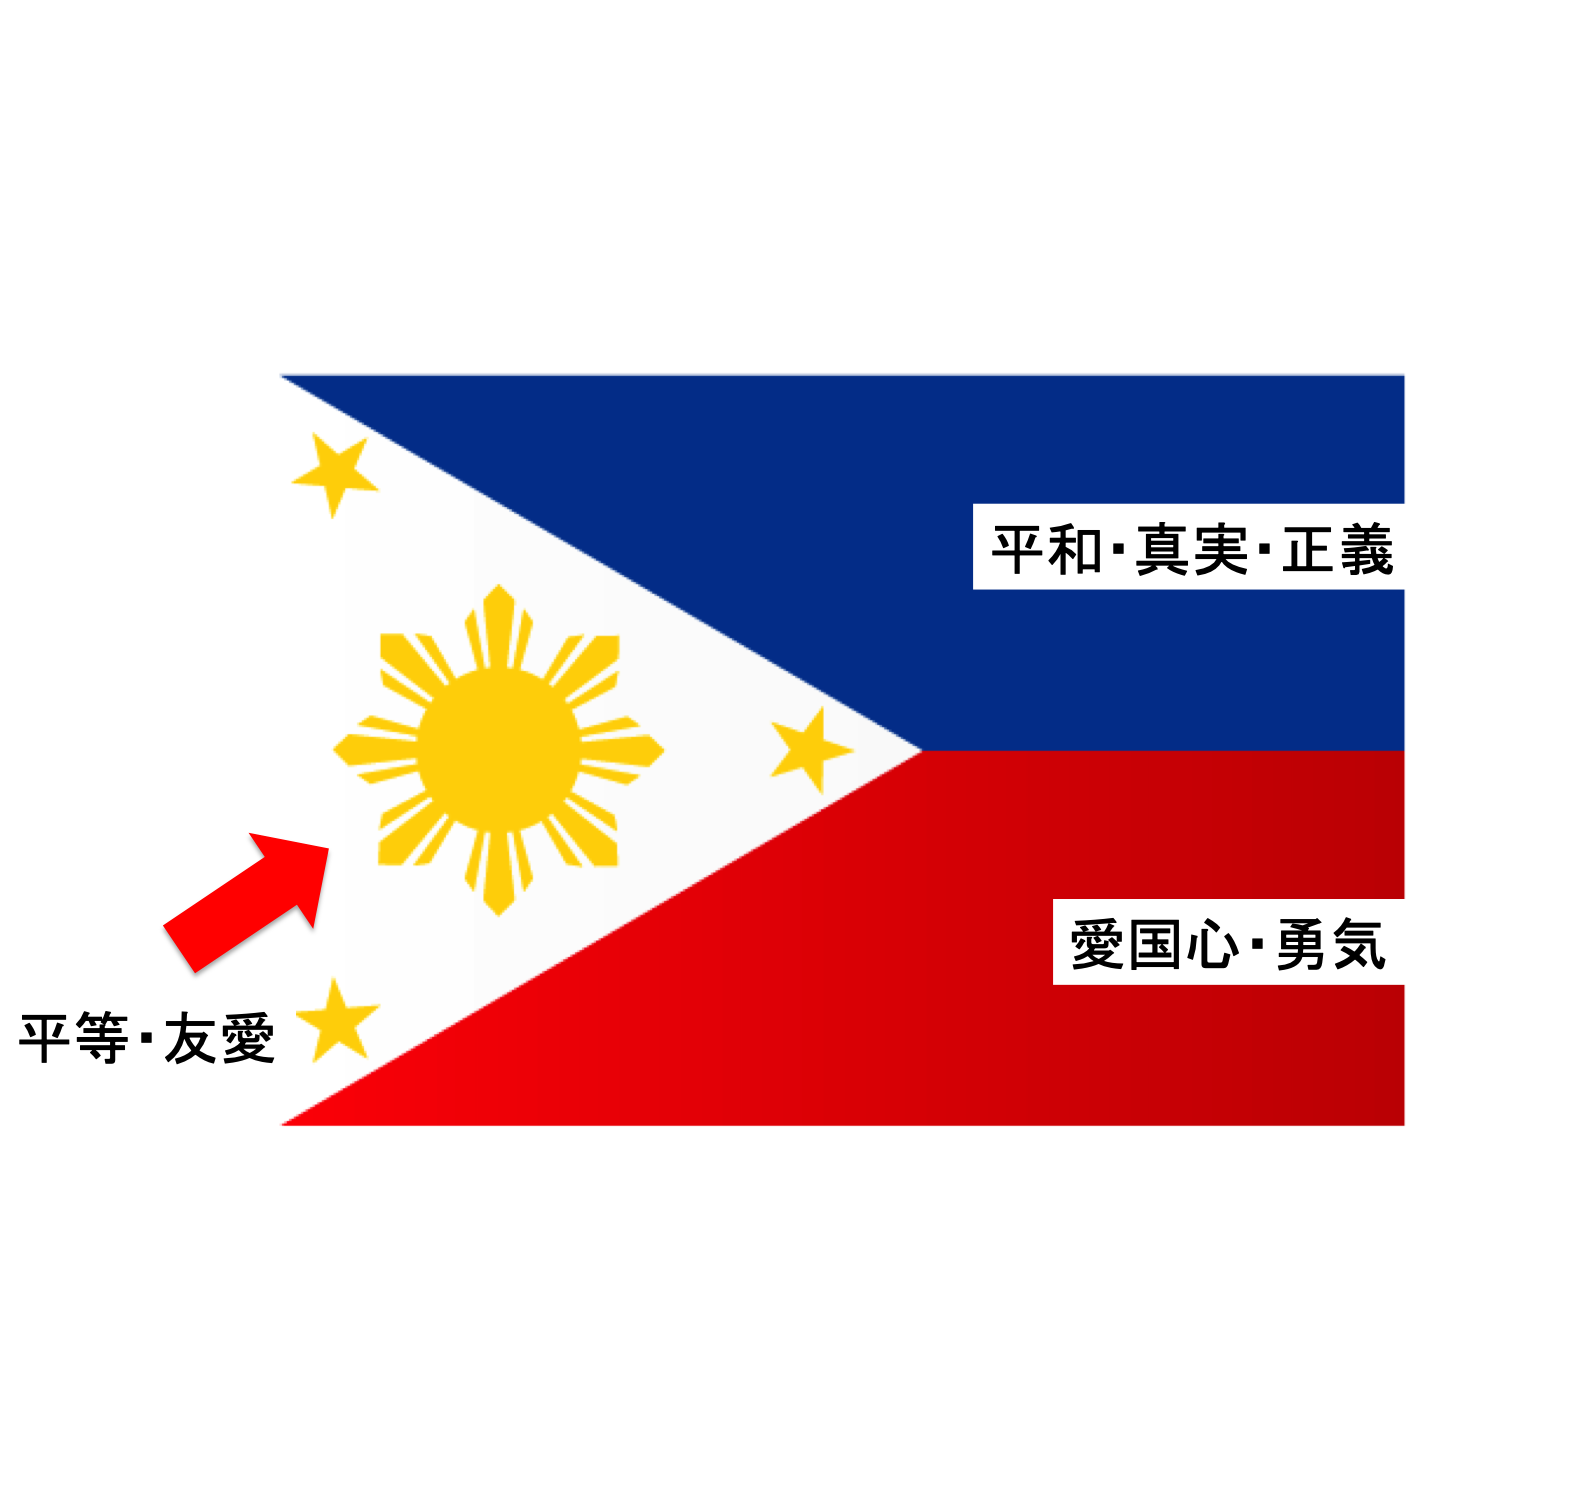 フィリピンの国旗にはこんな意味があった セブ島情報 デイリーマガジン エキサイトセブ